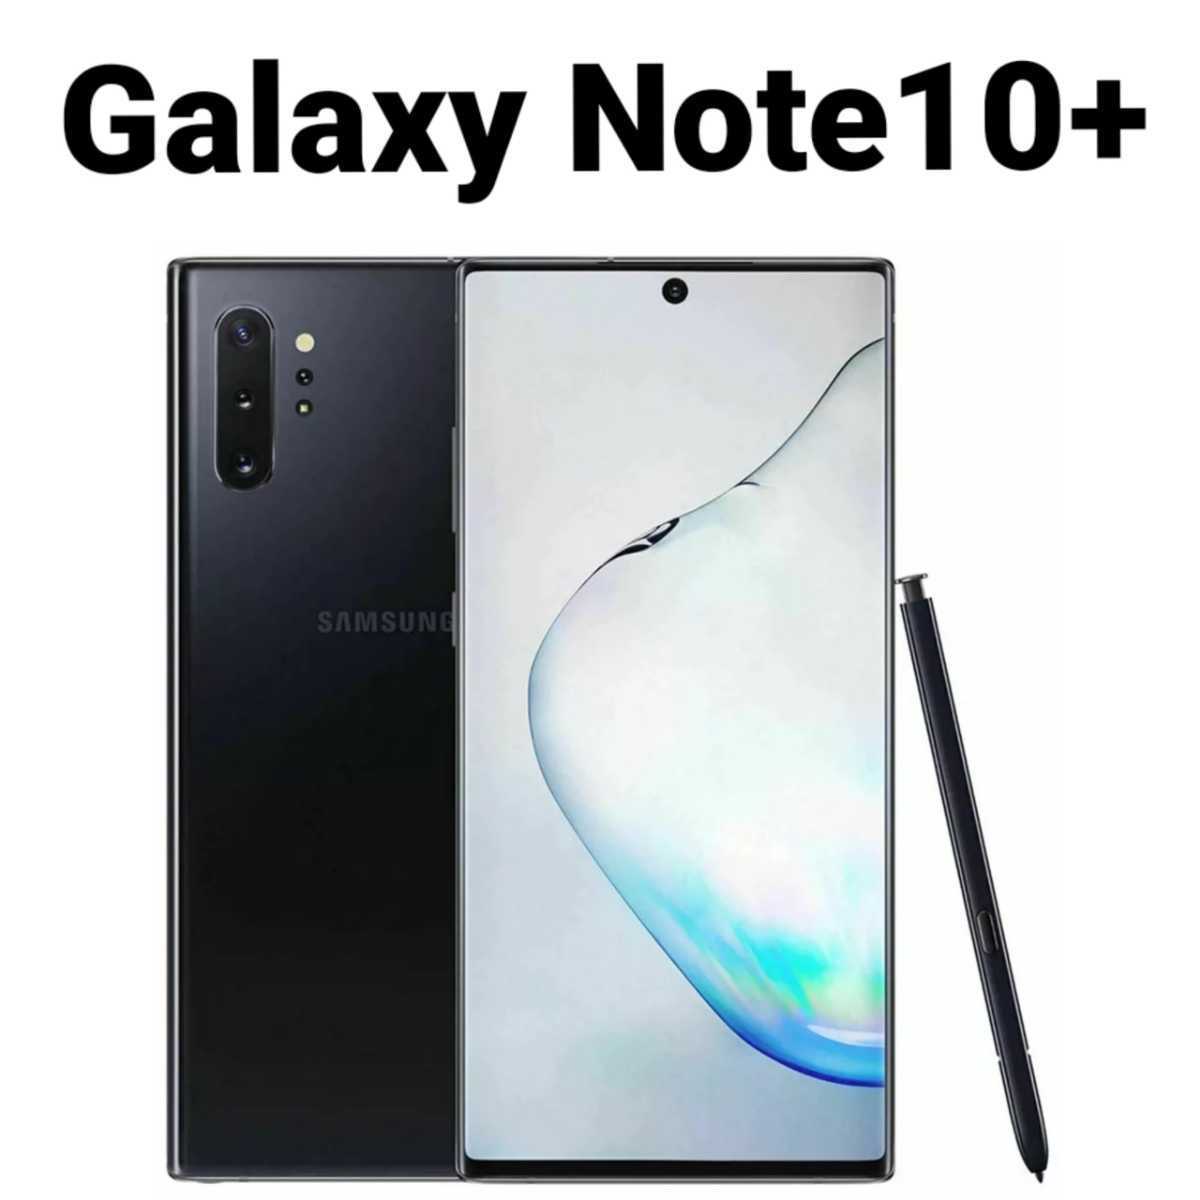 Galaxy Note10+ オーラブラック SIMフリー シャッター音なし 海外版 